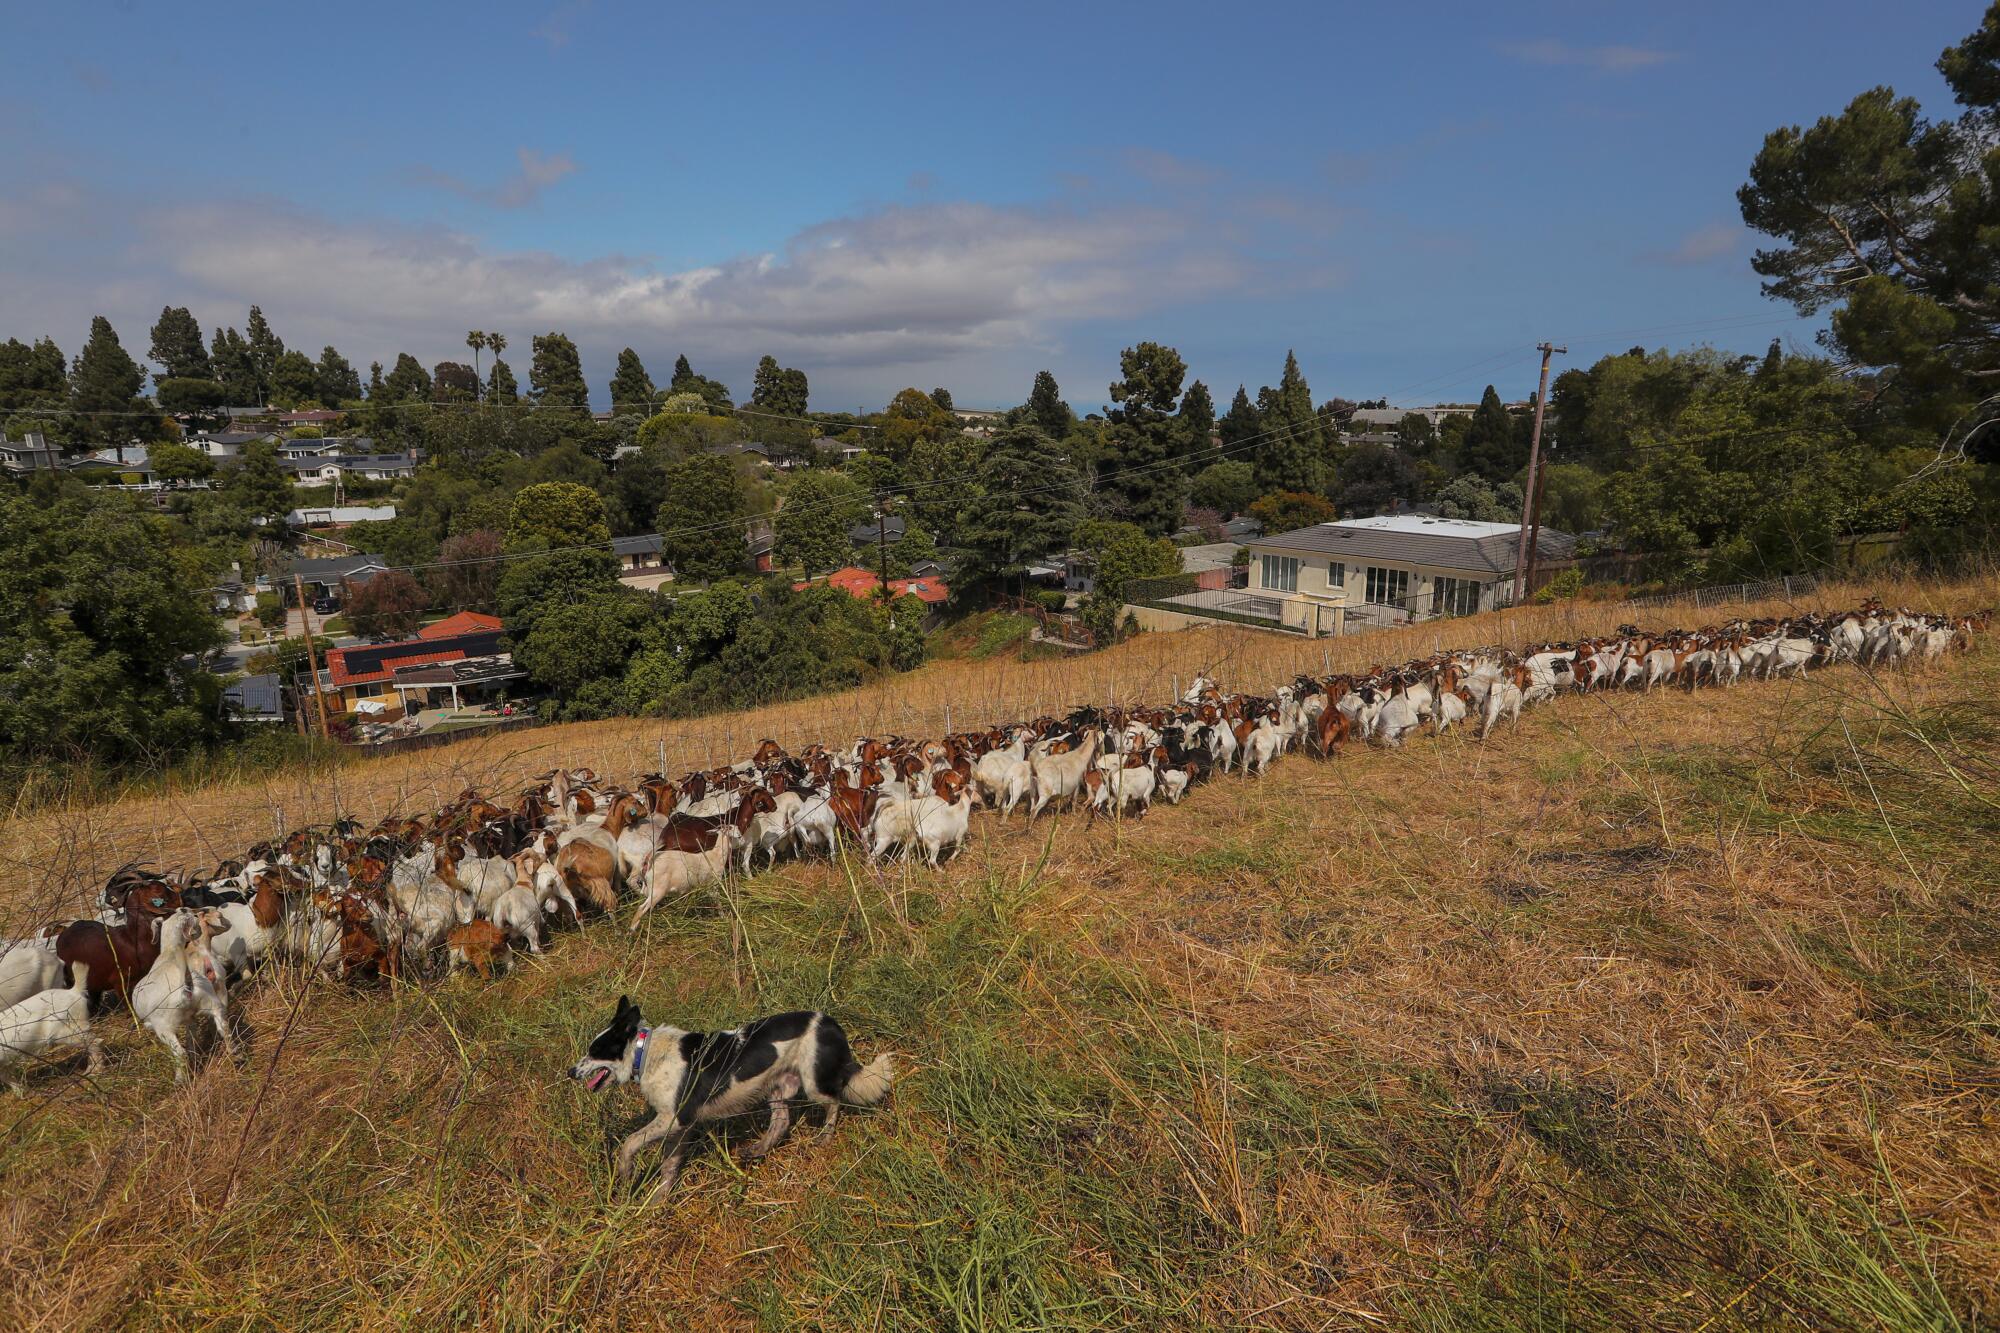 A herd of goats spread across a hillside